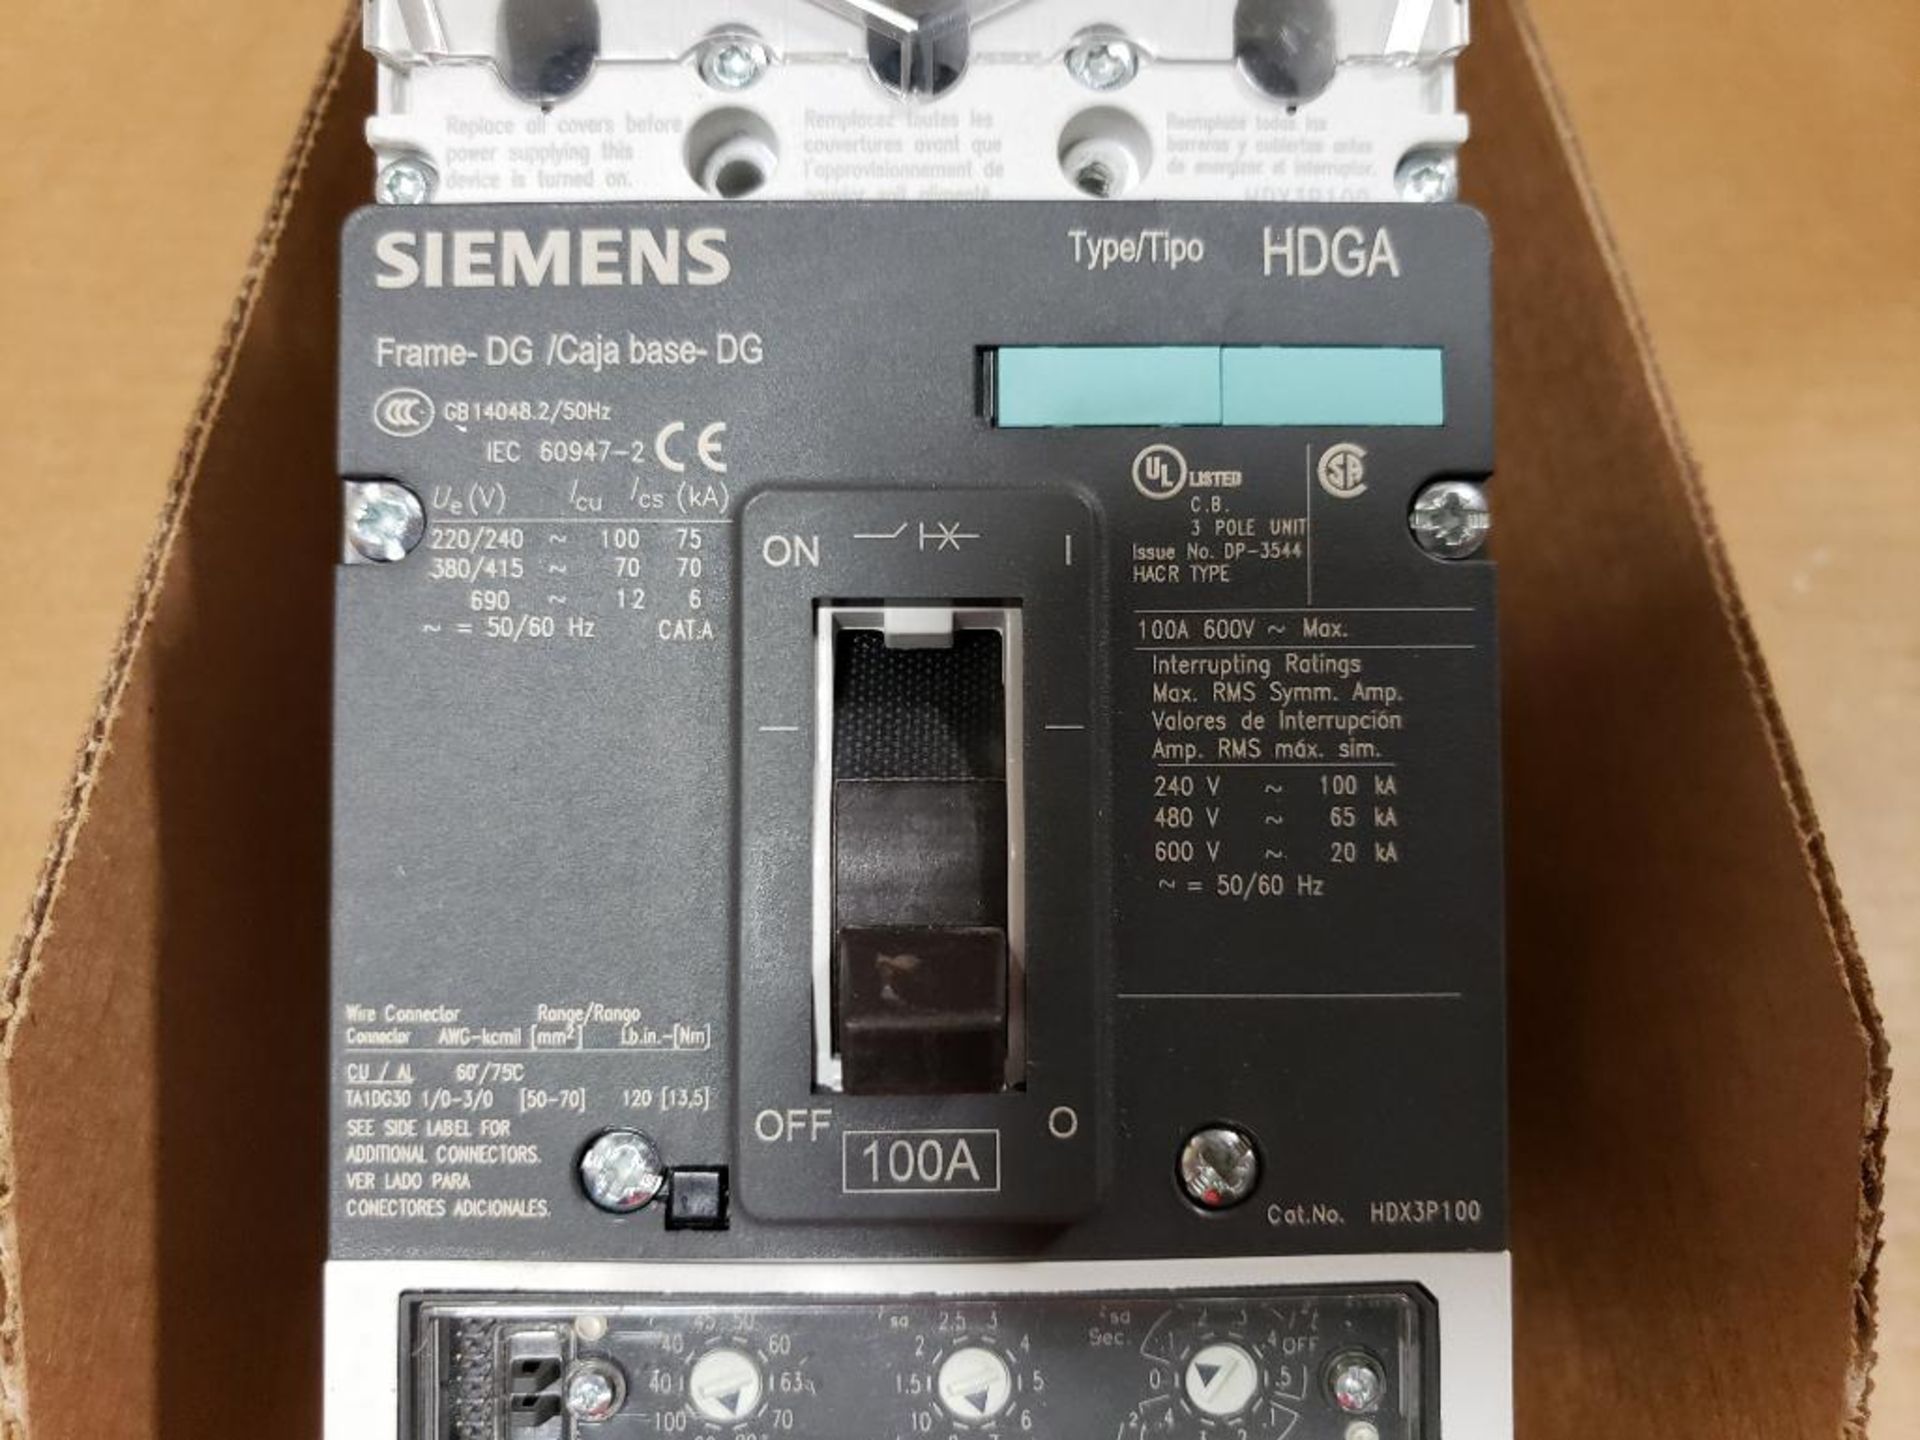 Siemens DP-3544 100A circuit breaker. - Image 2 of 9